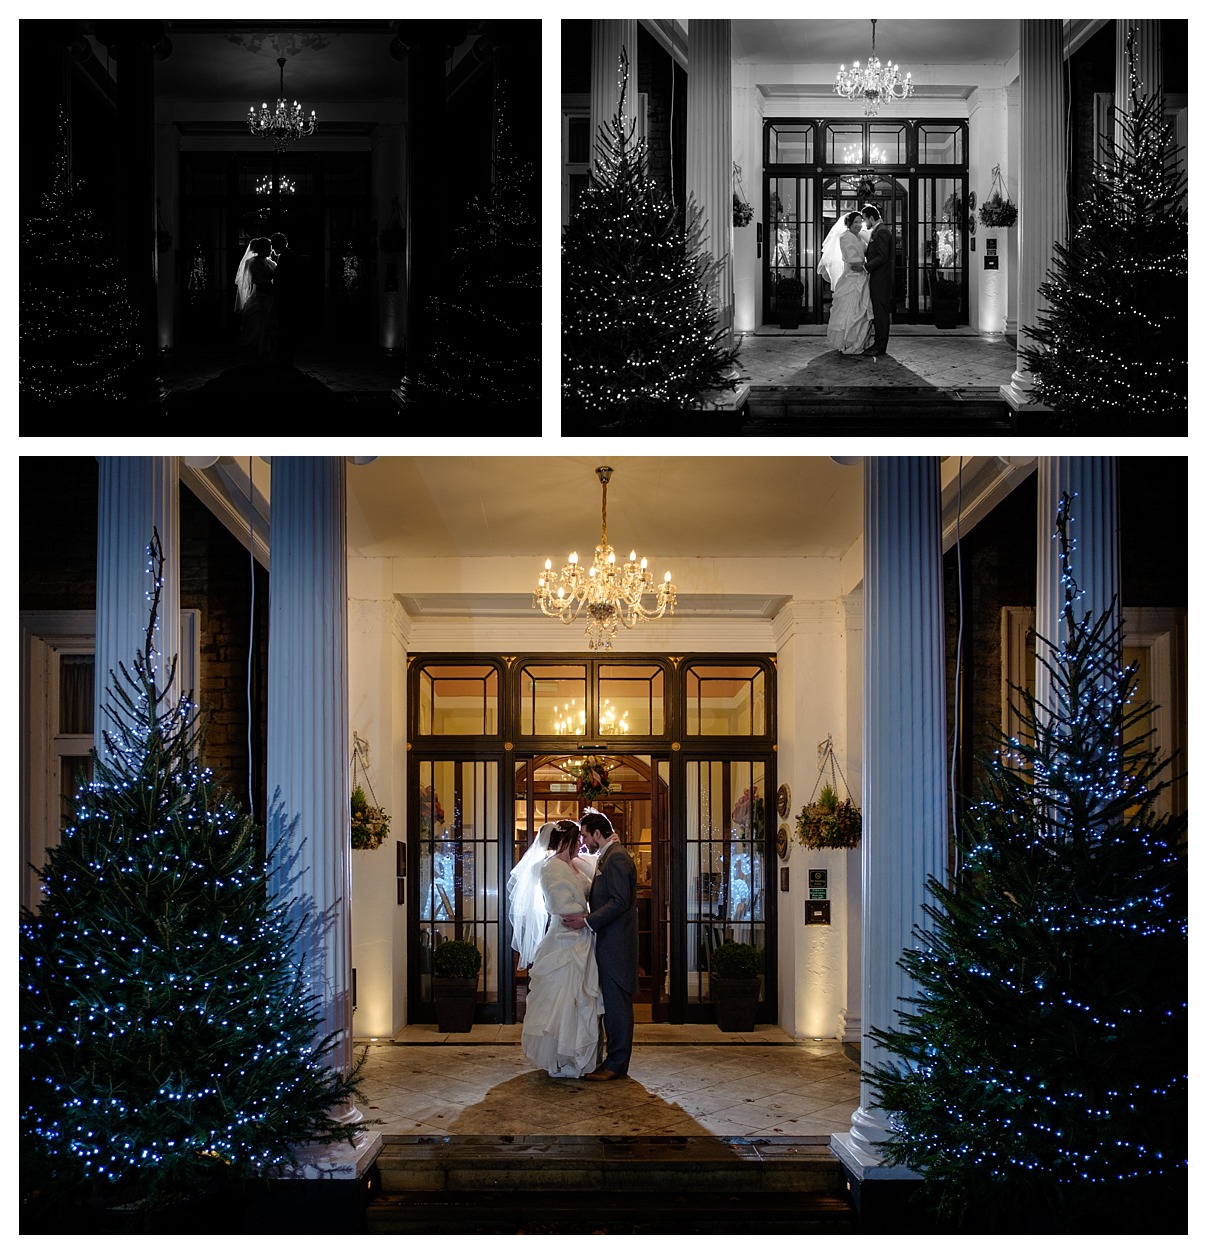 Ringwood Hall Christmas wedding by Derbyshire wedding photographer Chris Loneragan Sheffield 121600029